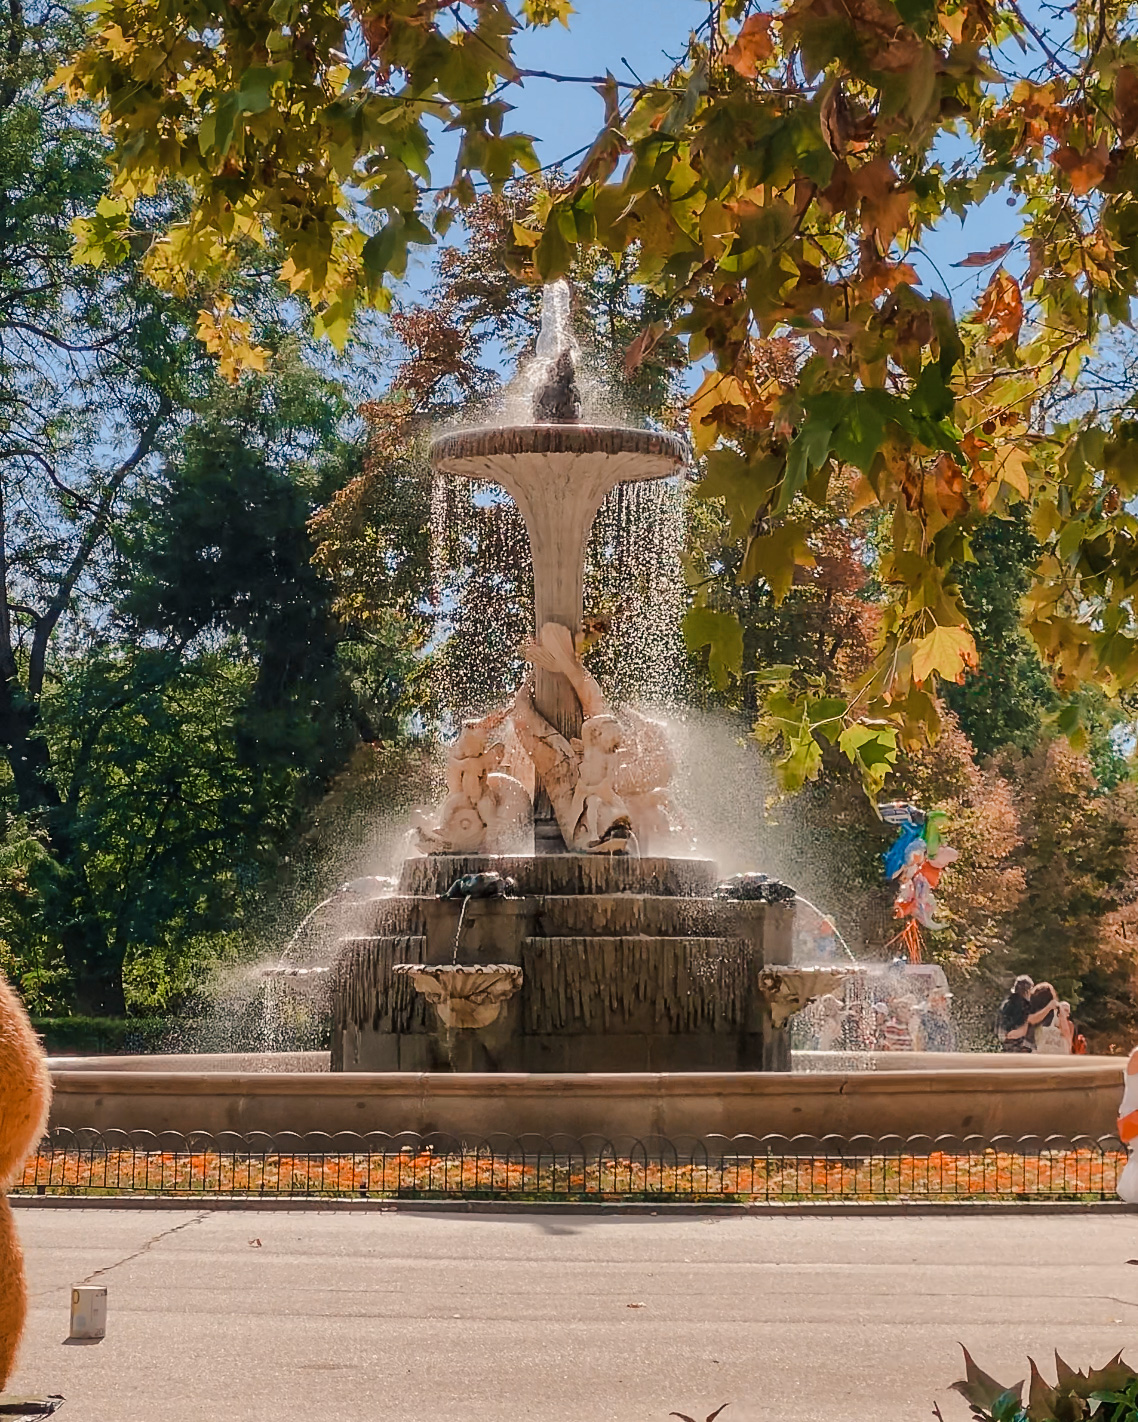 Glowing fountain in fall in madrid